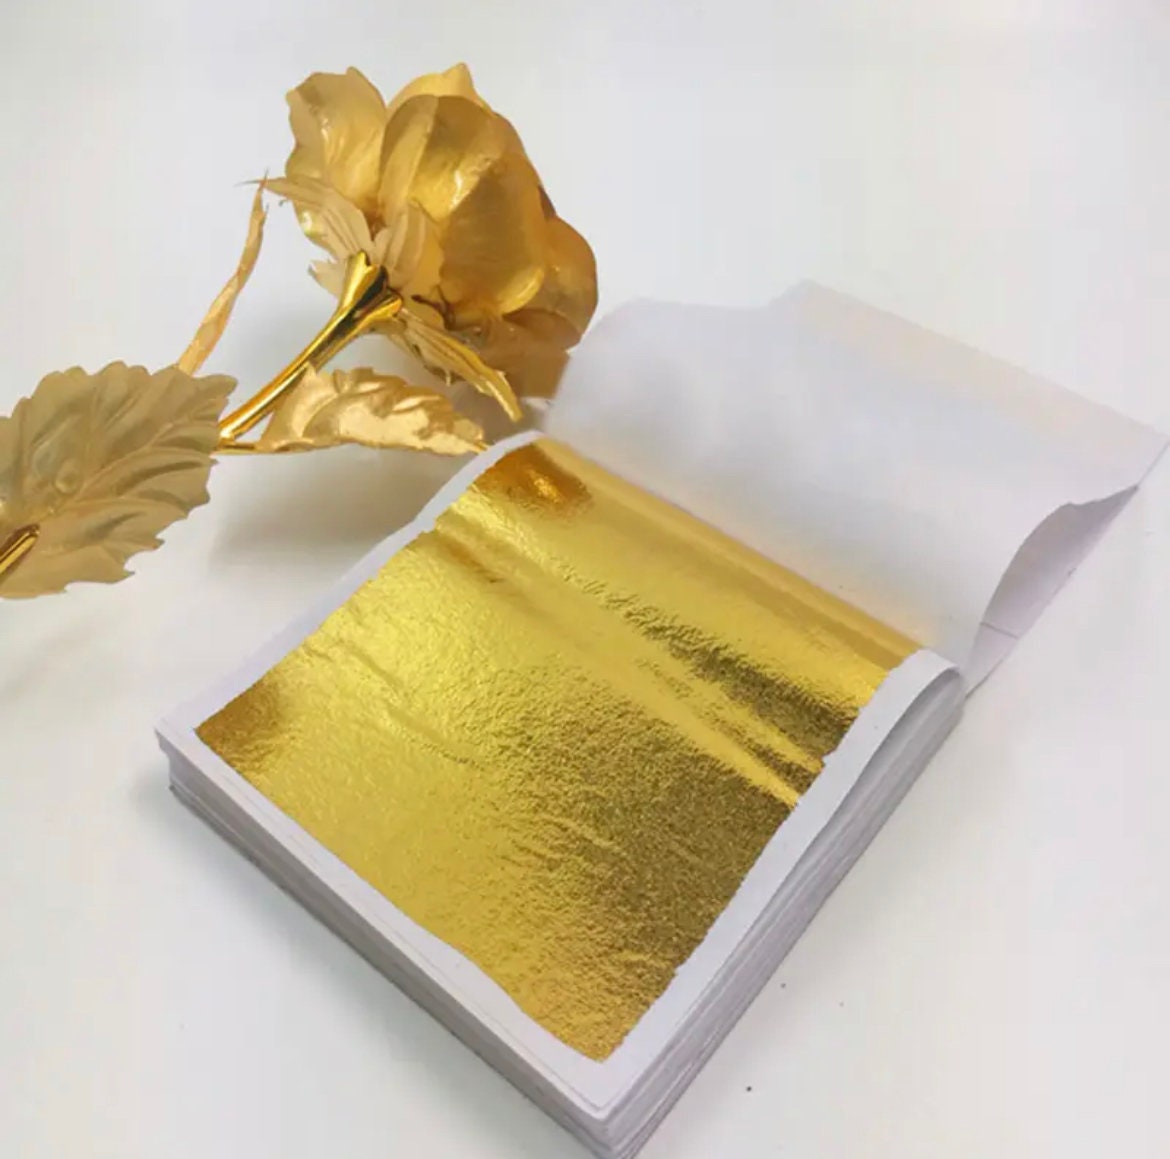 10 Sheets Gold Foil Leaf 100% 24K for Art Crafts Design Gilding Framing  Scrap Golden